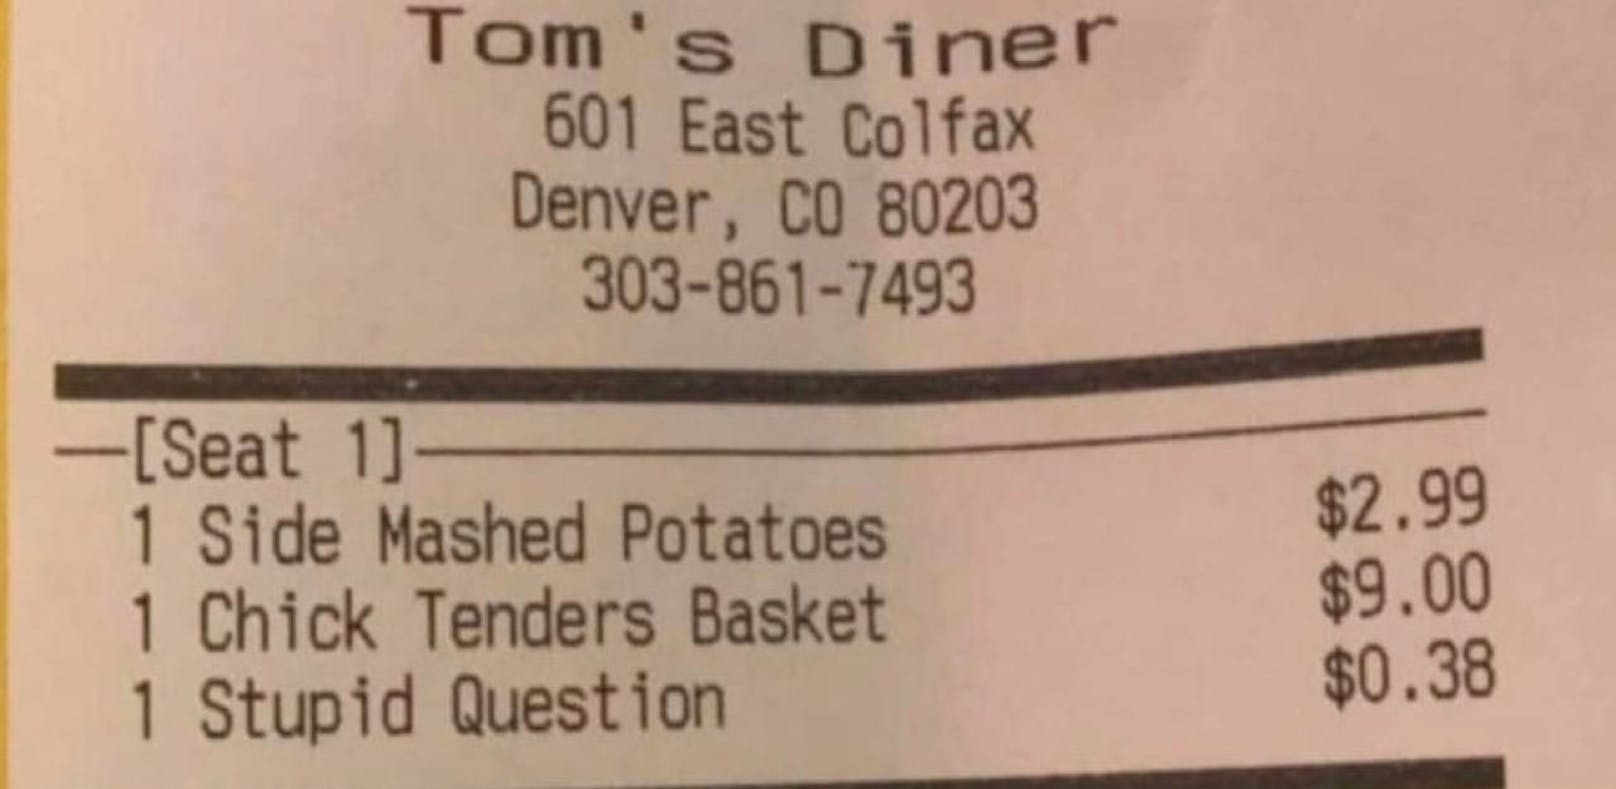 Ein Diner in Denver (Colorado) verrechnet 38 Cent für &quot;dumme Fragen&quot; - absichtlich!